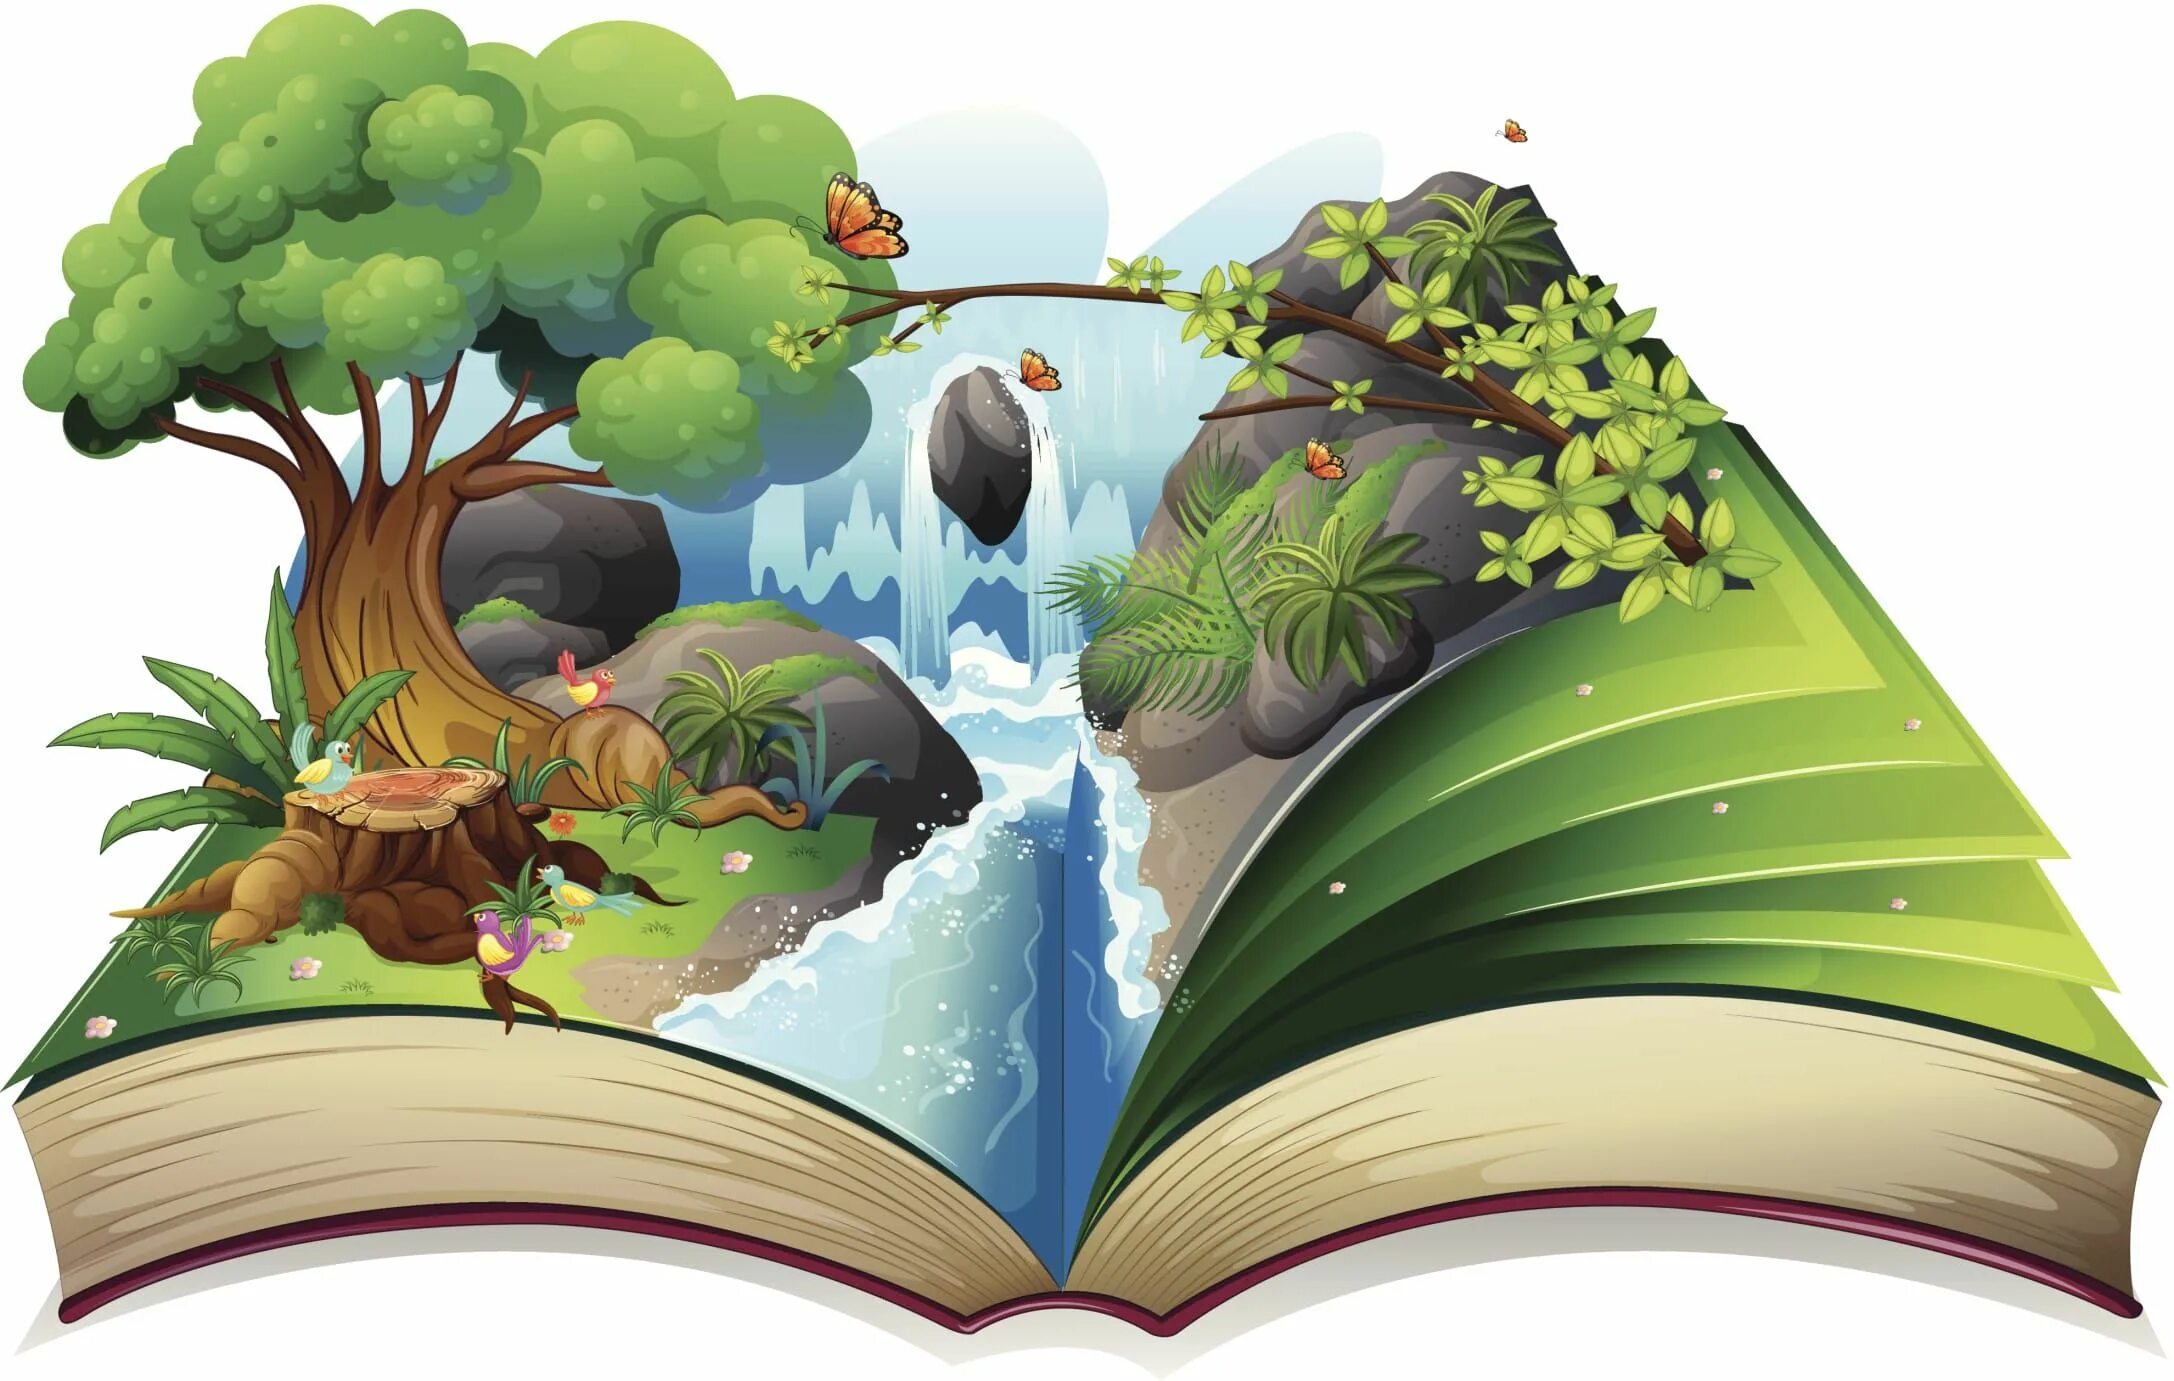 Чтение про путешествие. Путешествие в мир сказок. Иллюстрации к книгам. Сказочные книги для детей. Раскрытая детская книга.